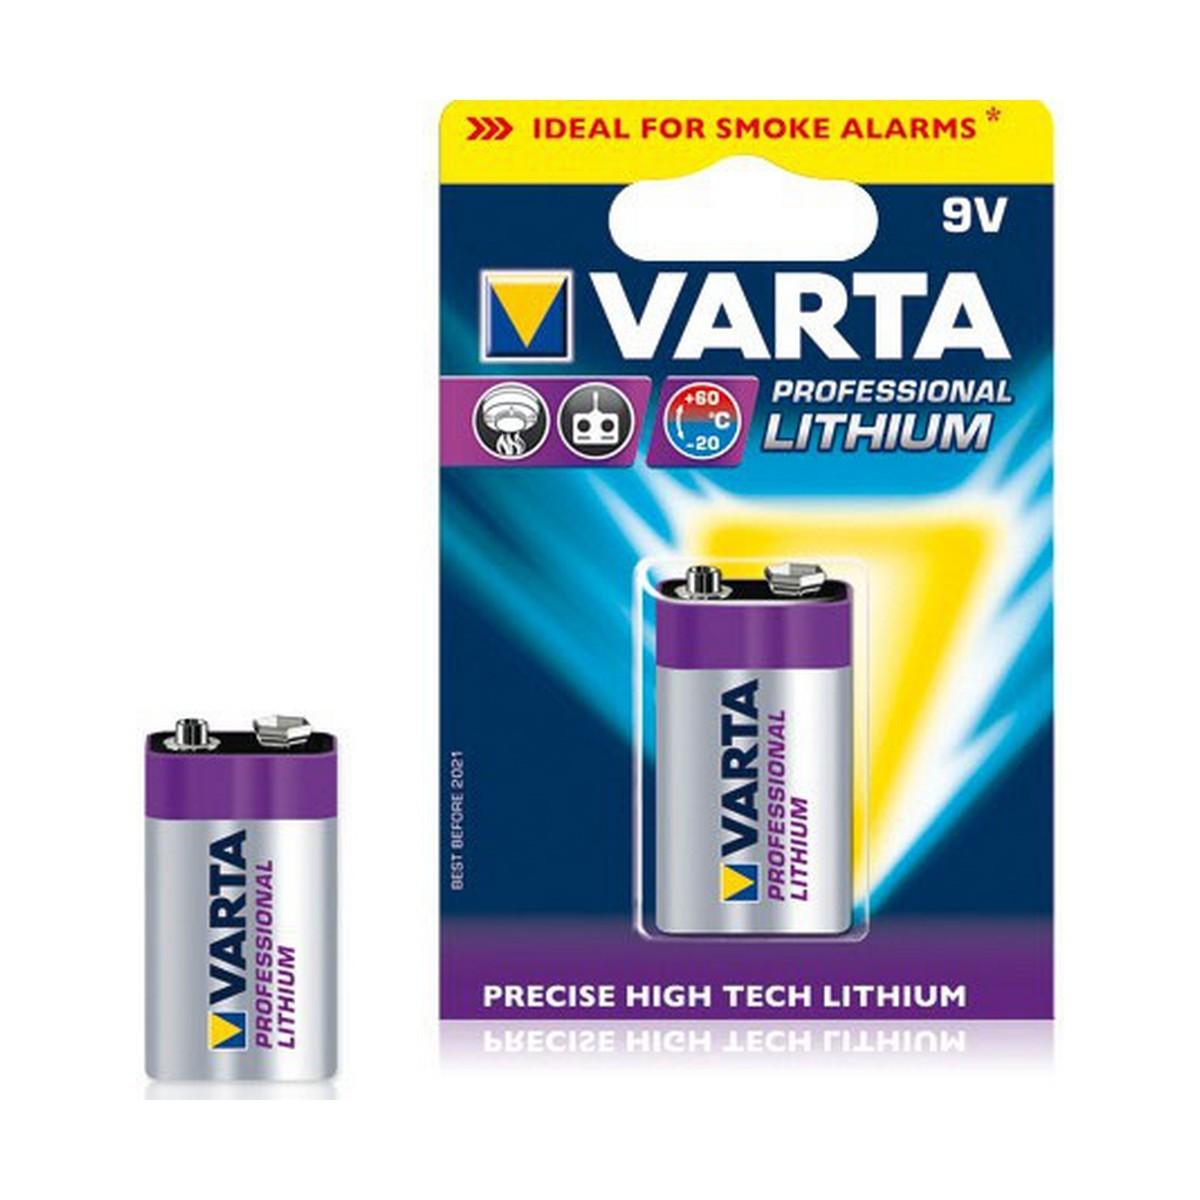 Se Varta Professional Lithium 9v 1 Pack (b) - Batteri hos Boligcenter.dk